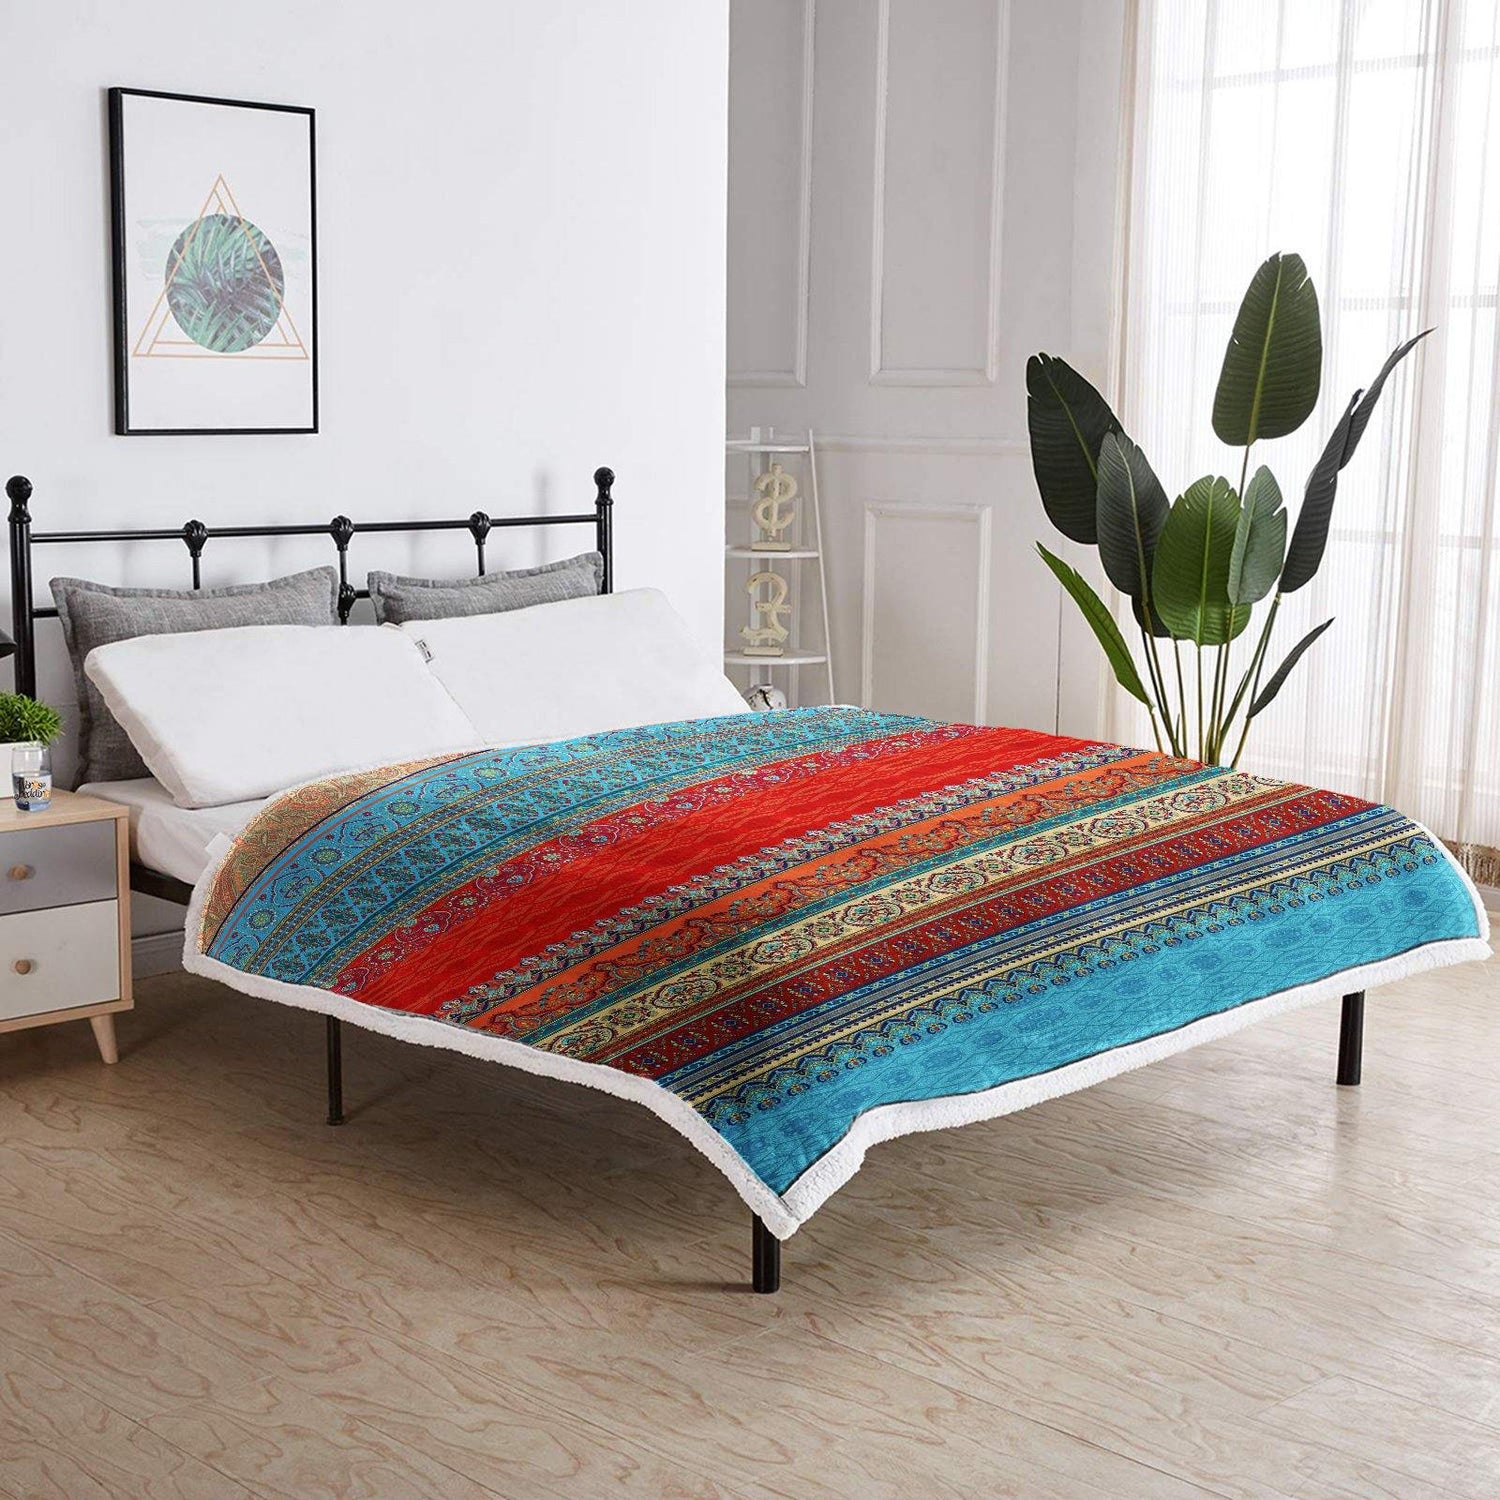 WONGS BEDDING Bohemian Design Blanket - Wongs bedding